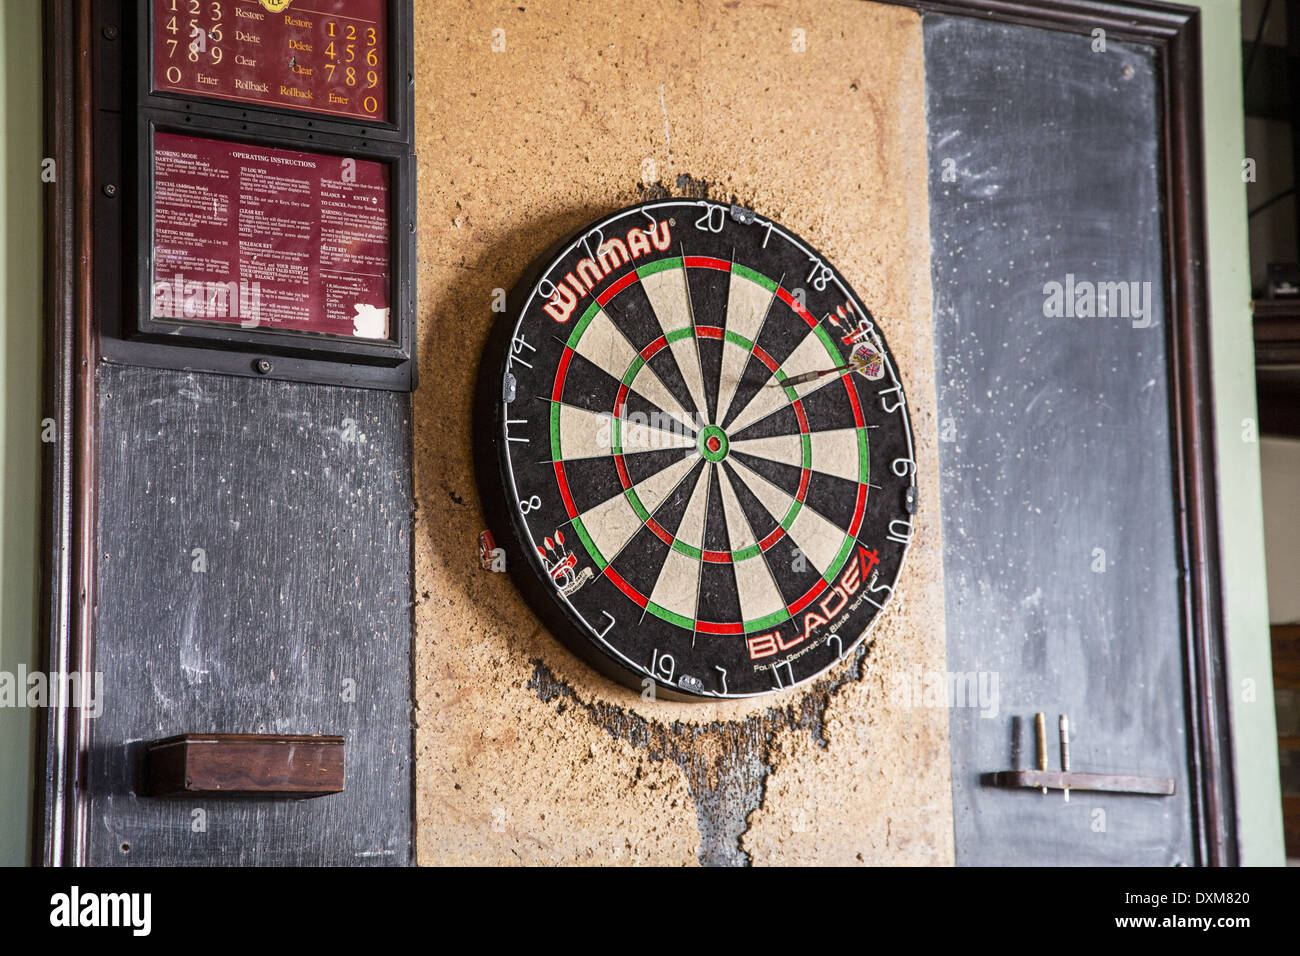 Dartboard in an English pub. Stock Photo